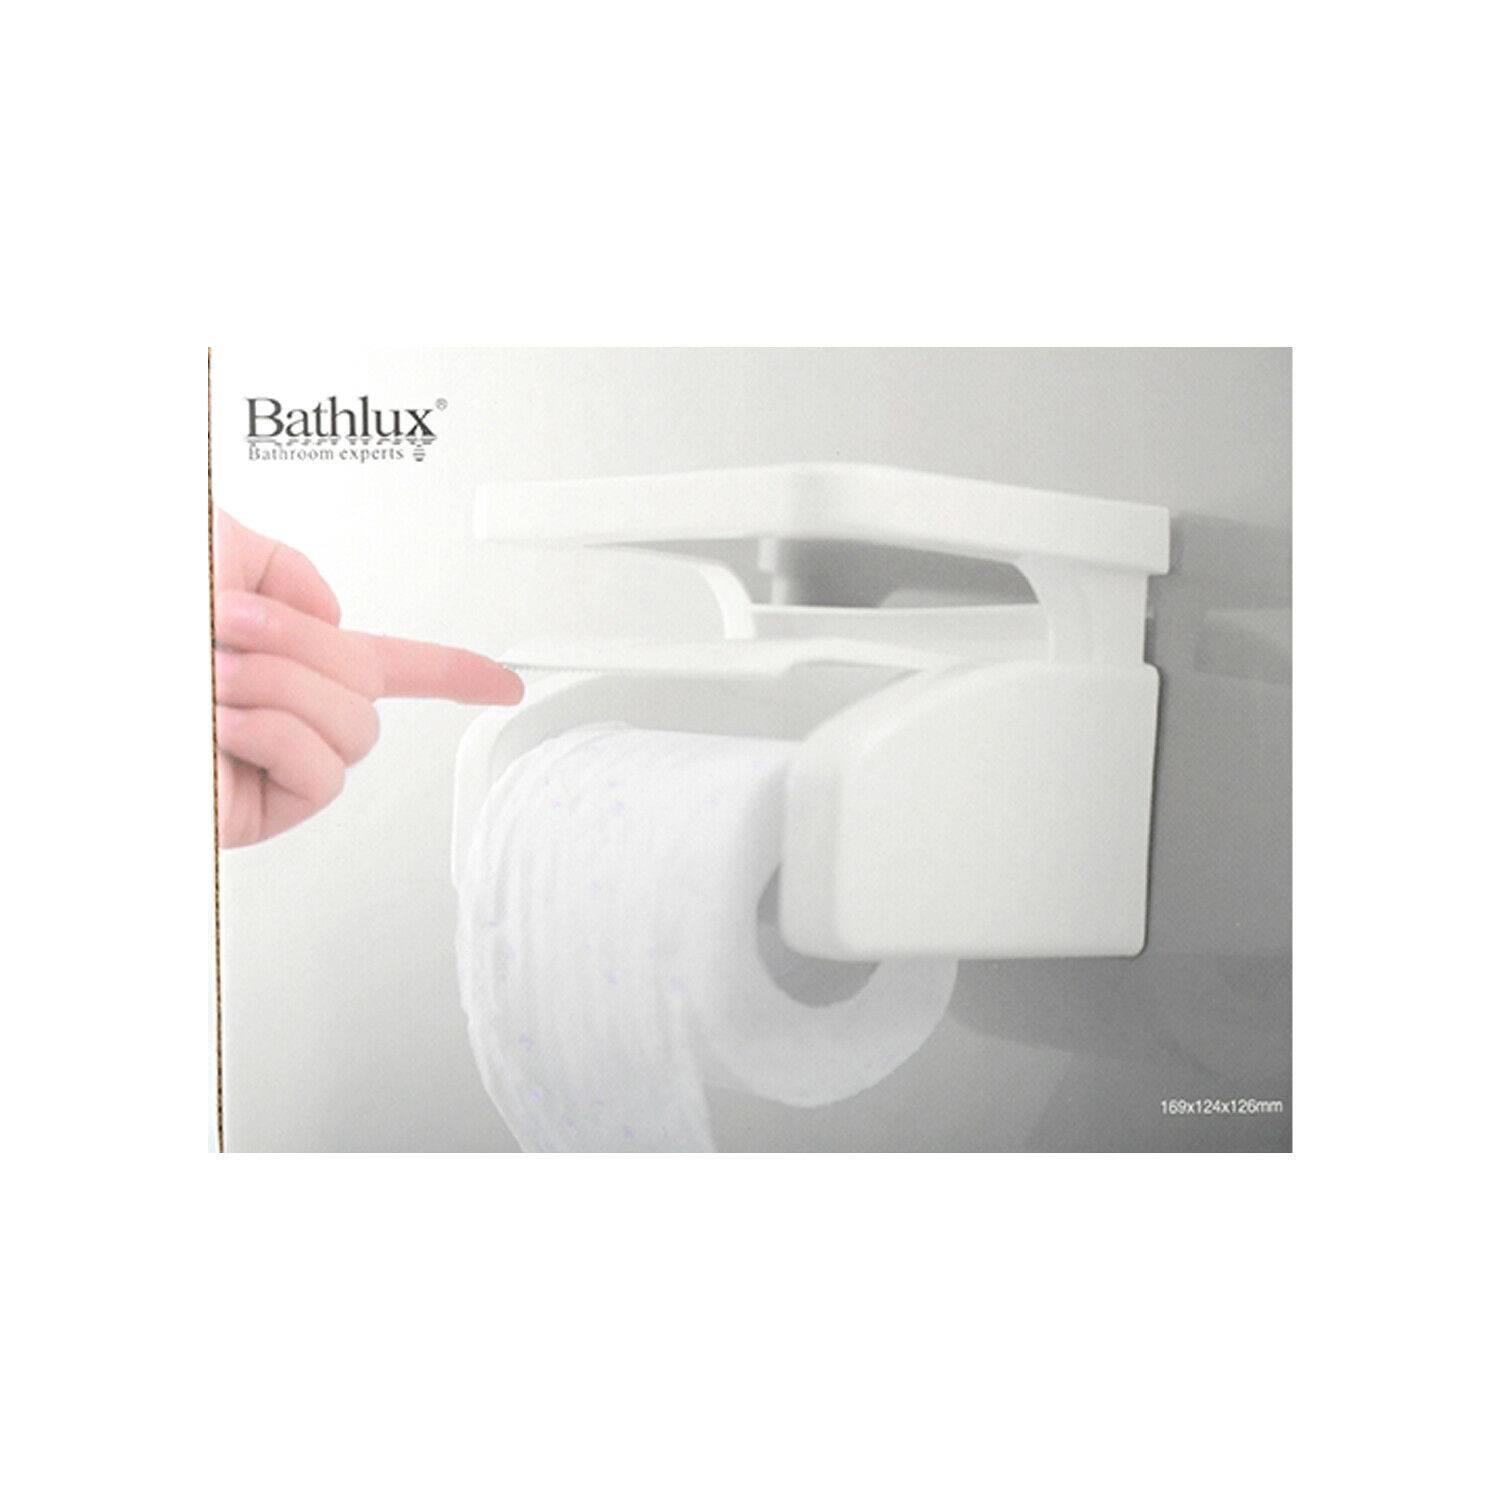 Bela - Porta rollos de papel higiénico ✨ Pago contra entrega 🚚 Entrega 15  - 20 días luego de confirmar el pedido . Envia foto 📷 de lo que necesitas  por DM